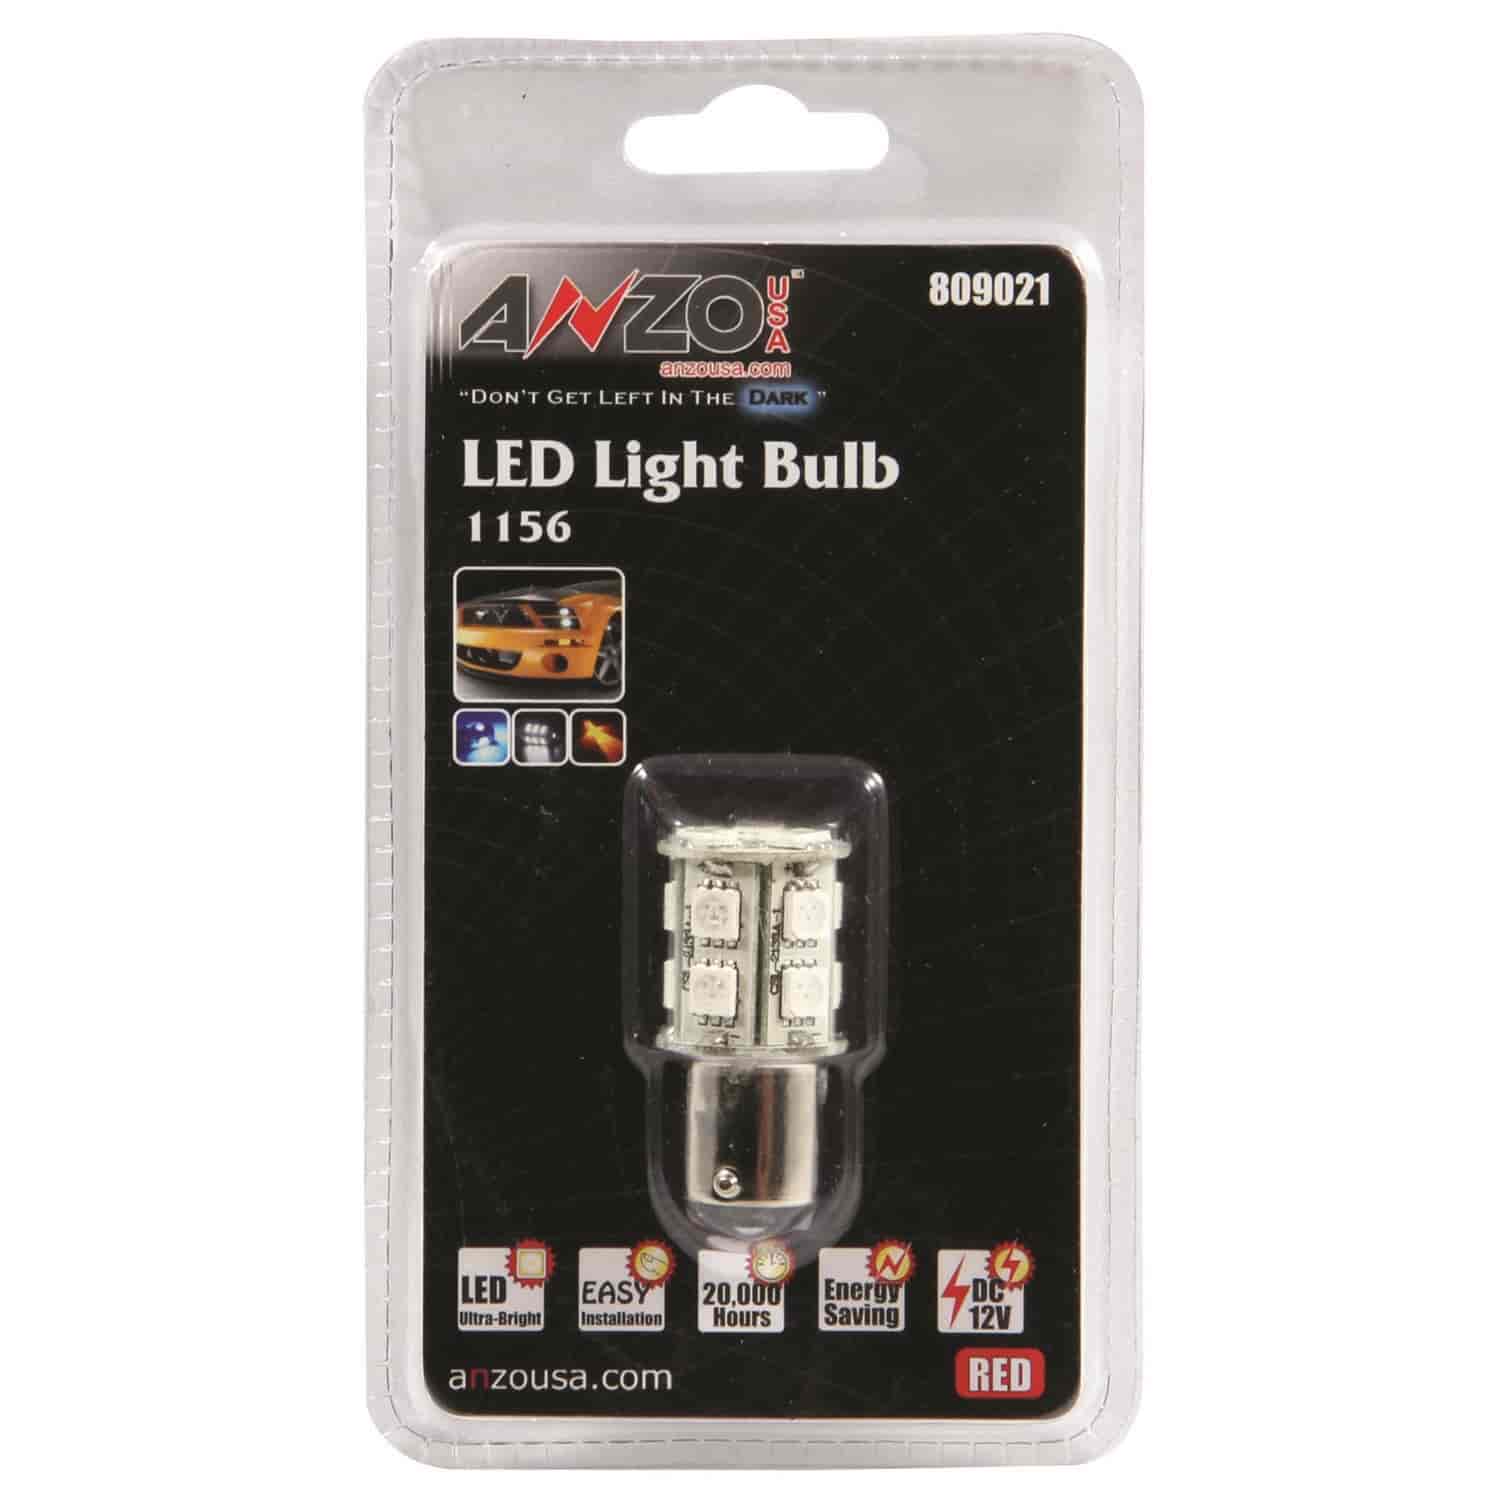 LED Universal Light Bulb 1156 Red -13